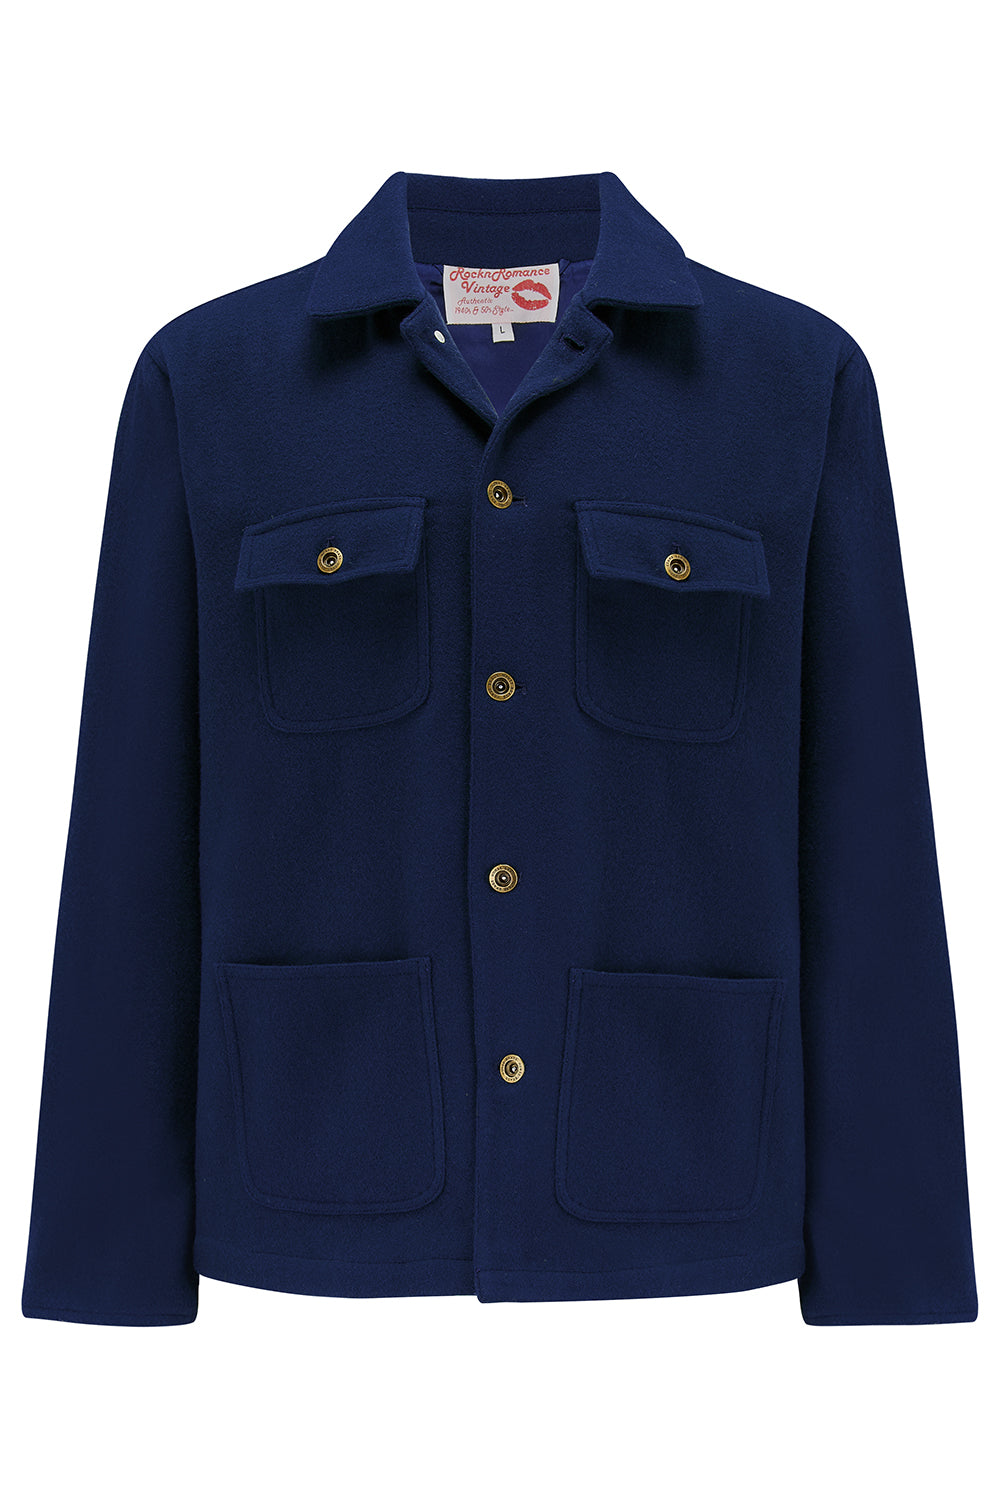 La veste de corvée pour hommes « Bronson » en bleu marine, extérieur 100 % laine .. Style vintage Rockabilly des années 1950